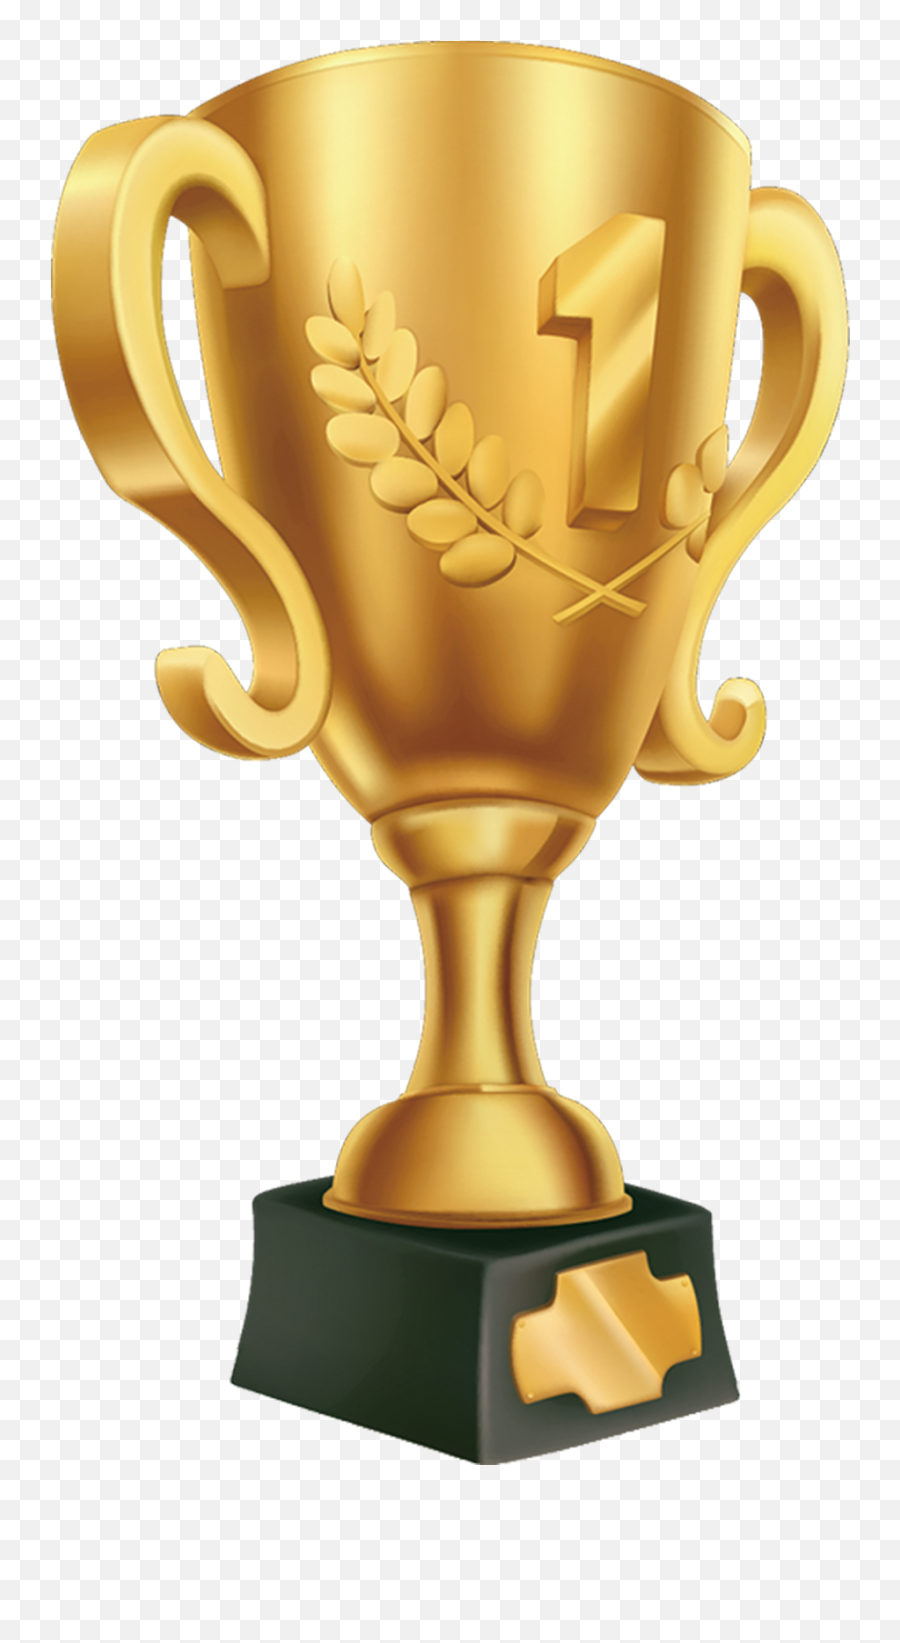 Golden Trophy Png Image Free Download - Gold Trophy Png Emoji,Trophy Png